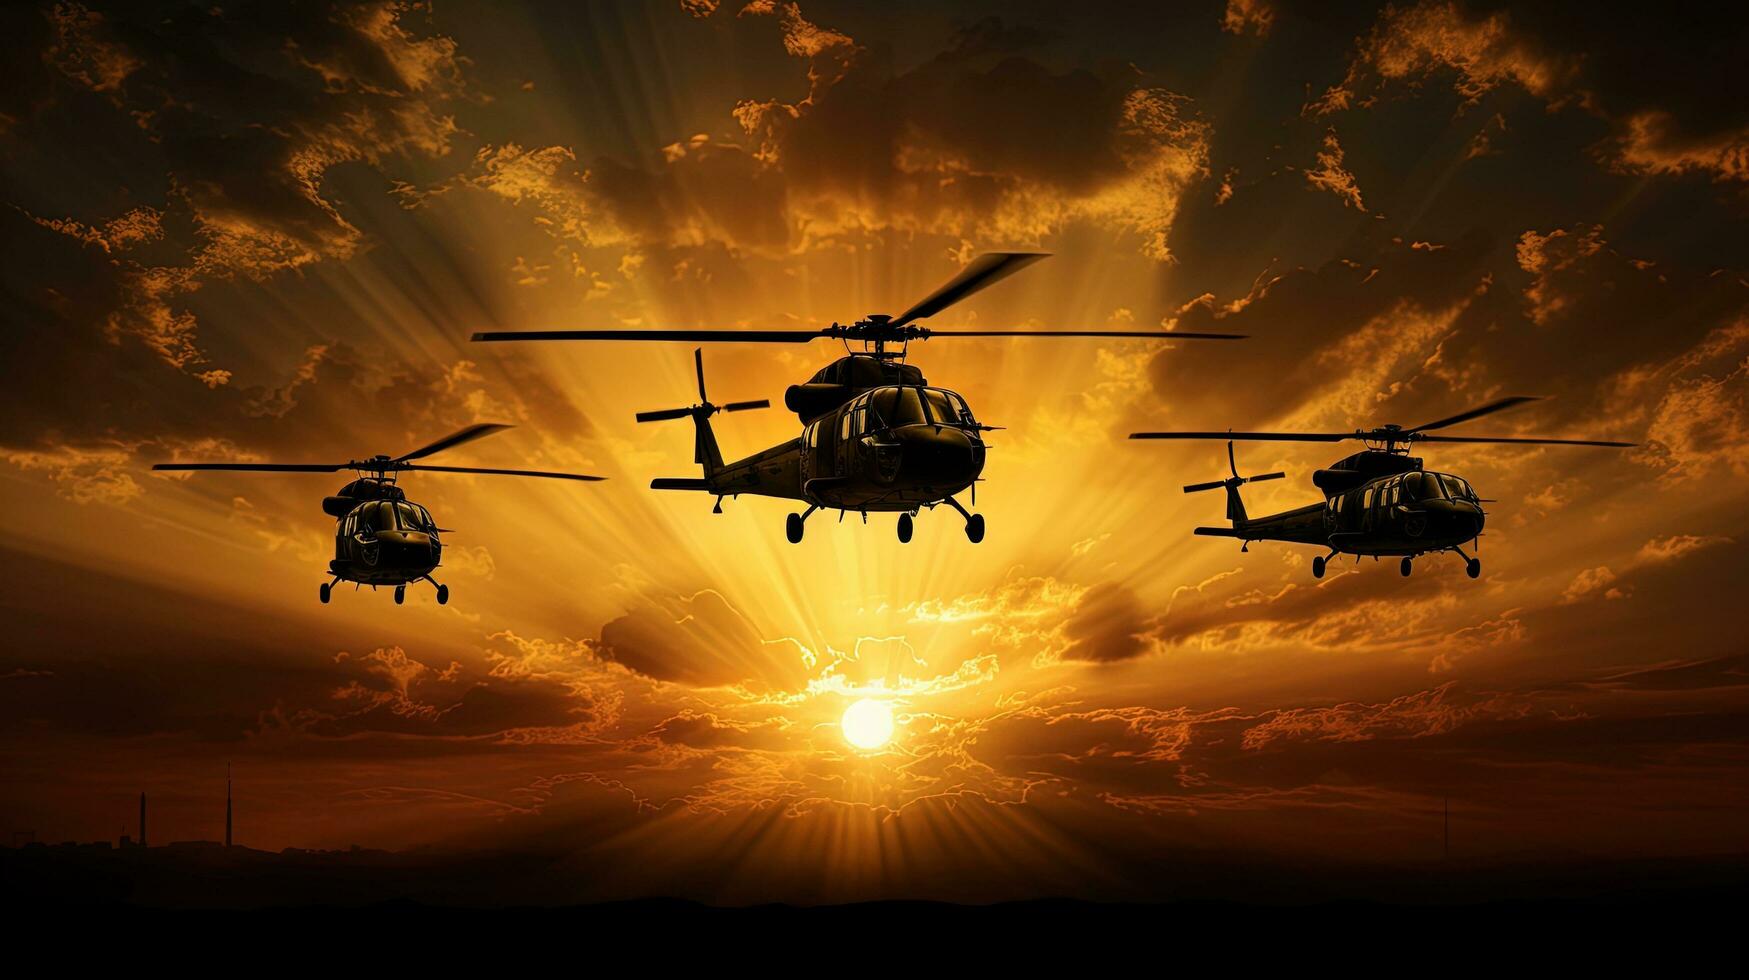 vijf leger helicopters aftekenen tegen een gouden zonsondergang lucht foto